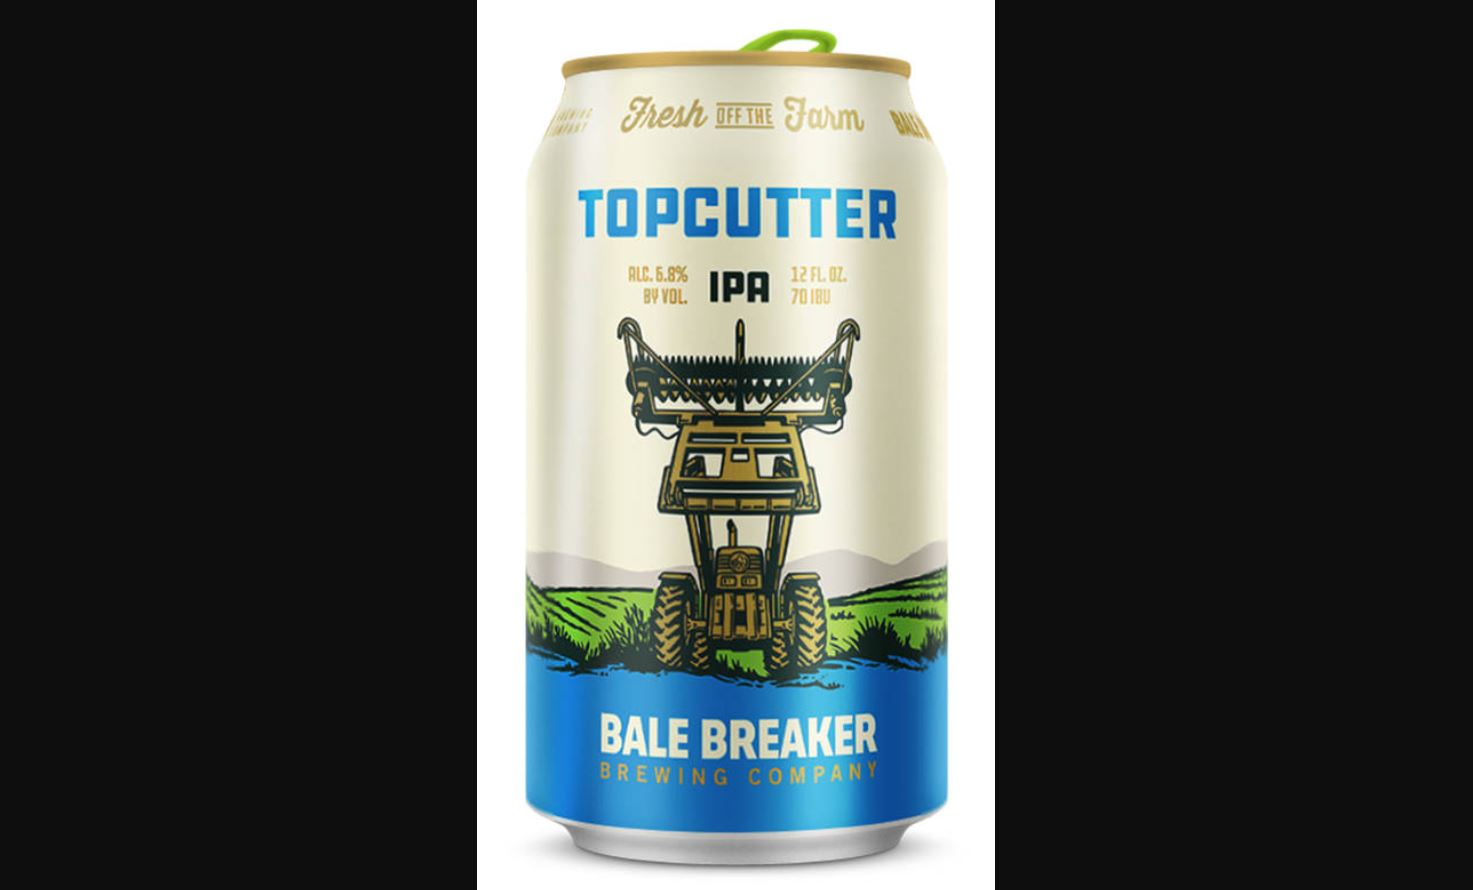 Bale Breaker Top Cutter